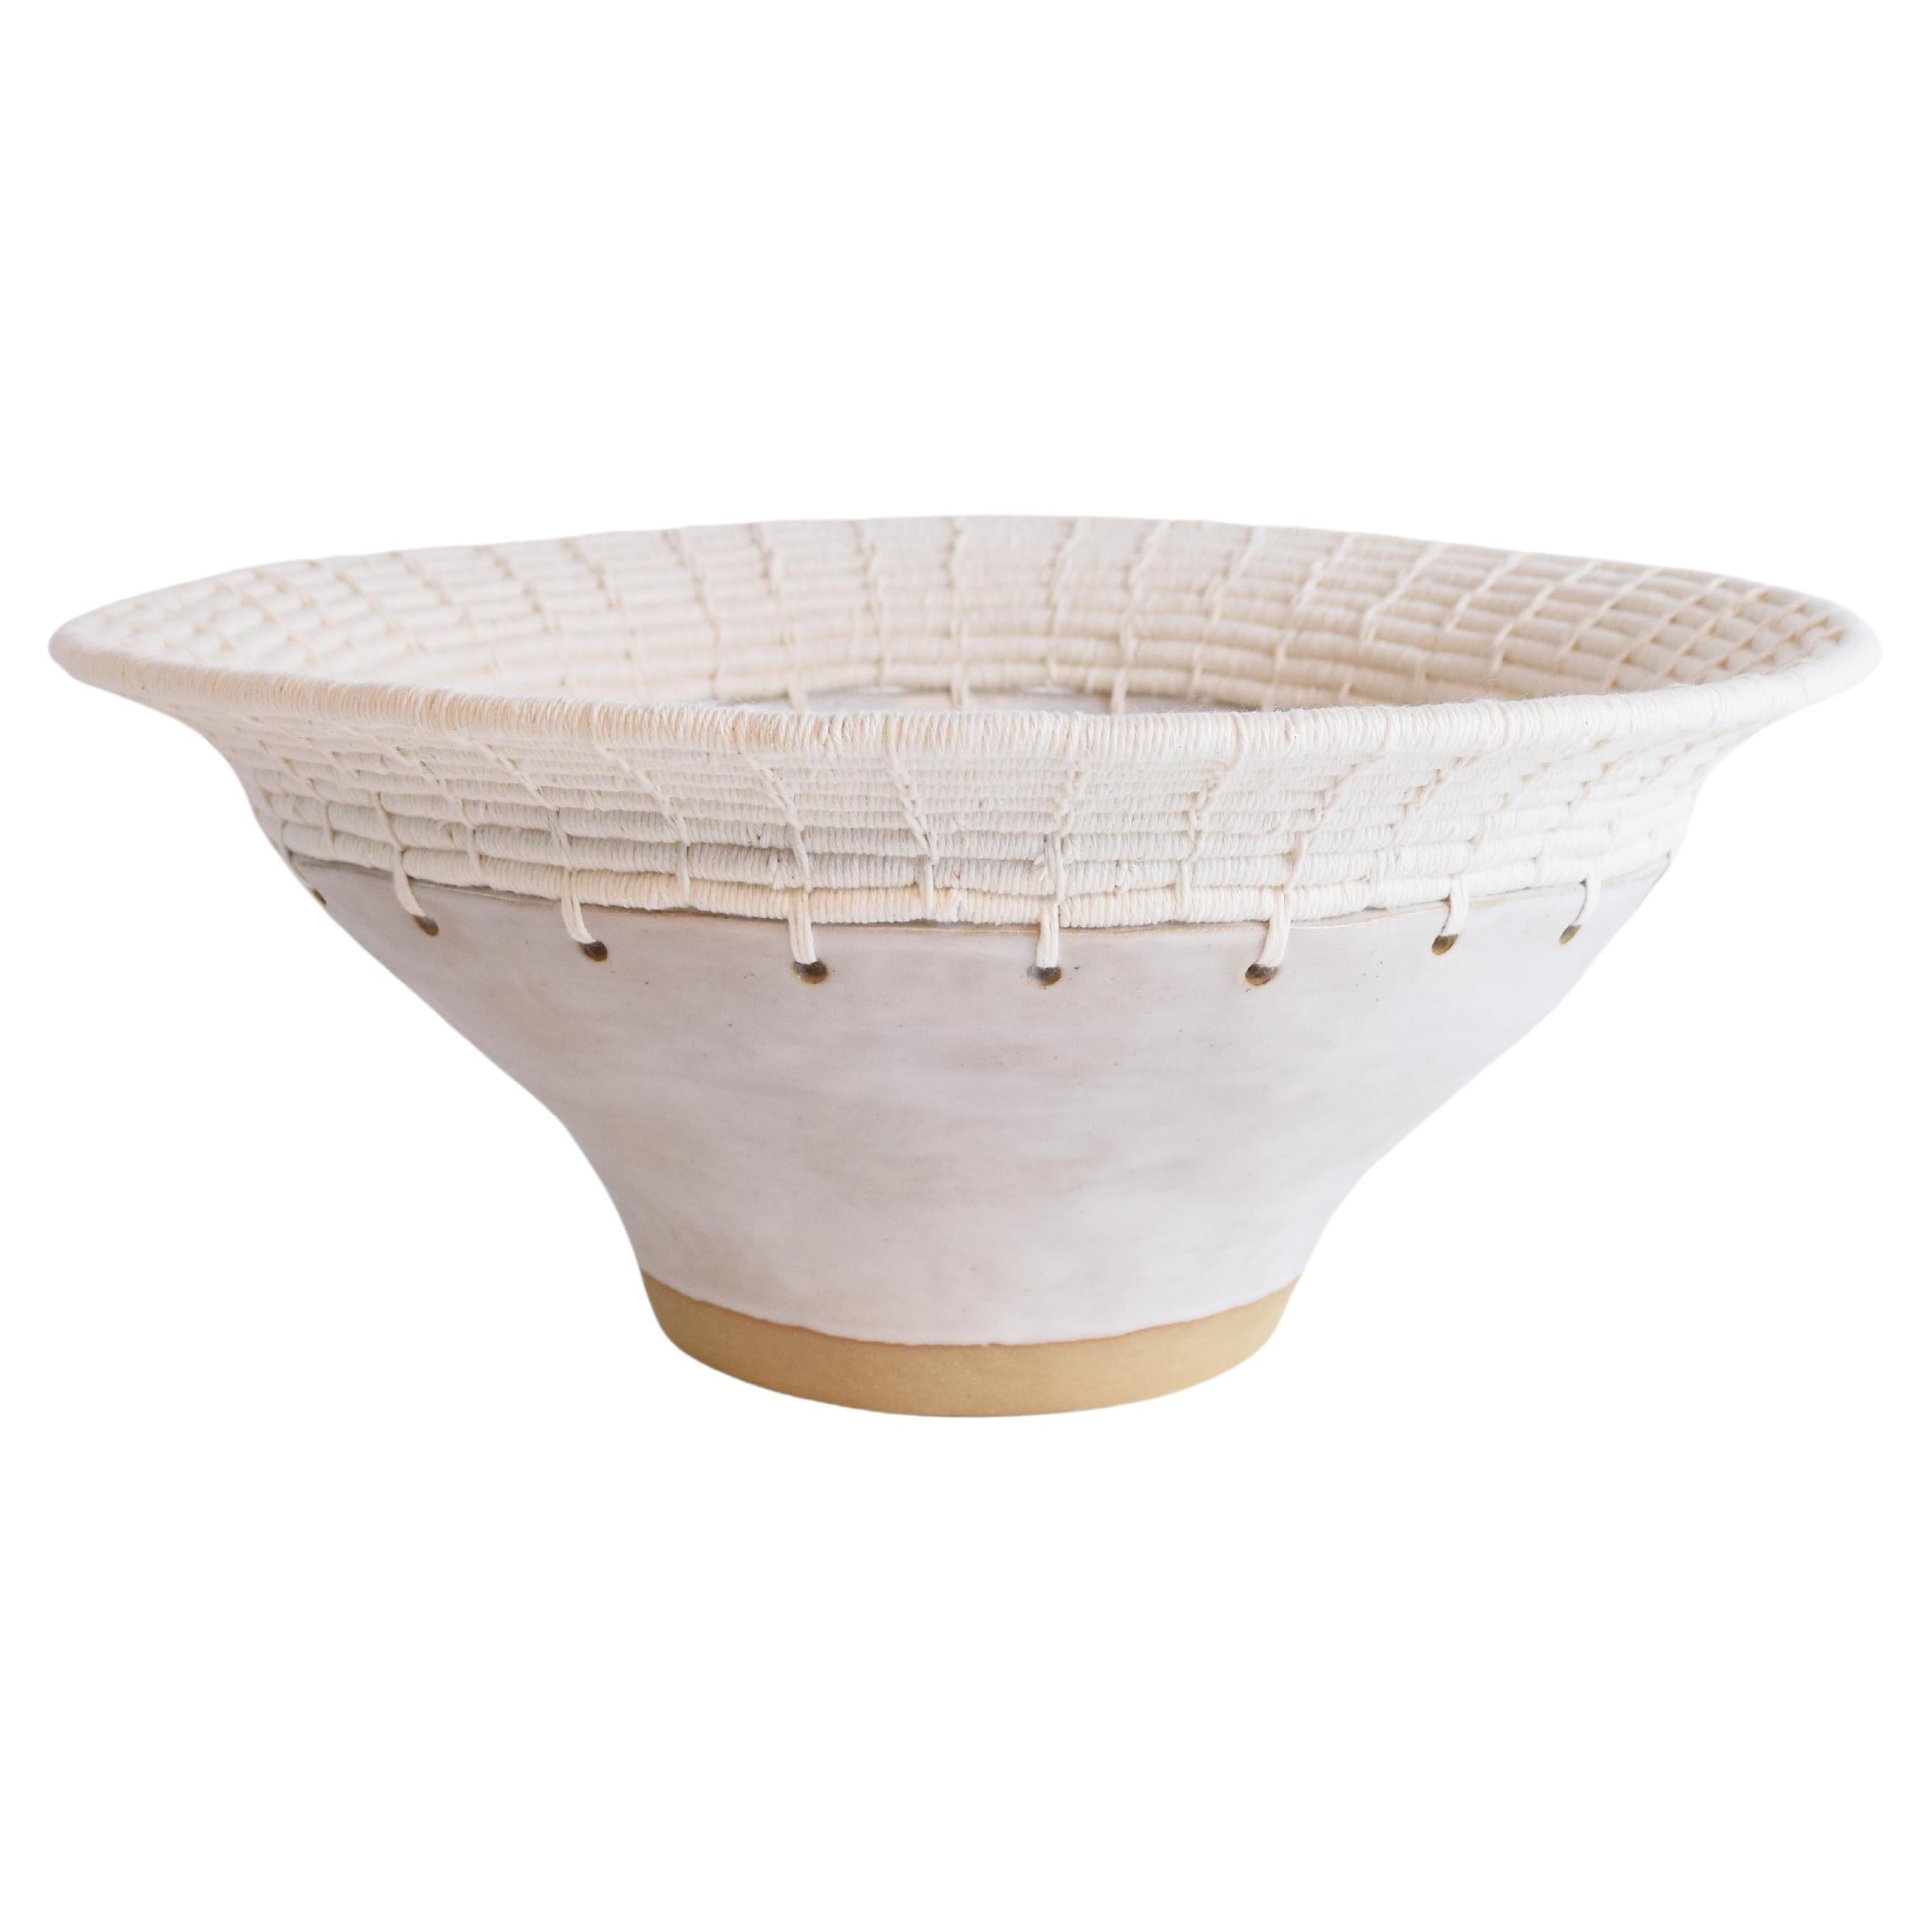 Handgefertigte Keramikschale #807, weiße Glasur und gewebte Baumwolle, oberer Teil, Unikat